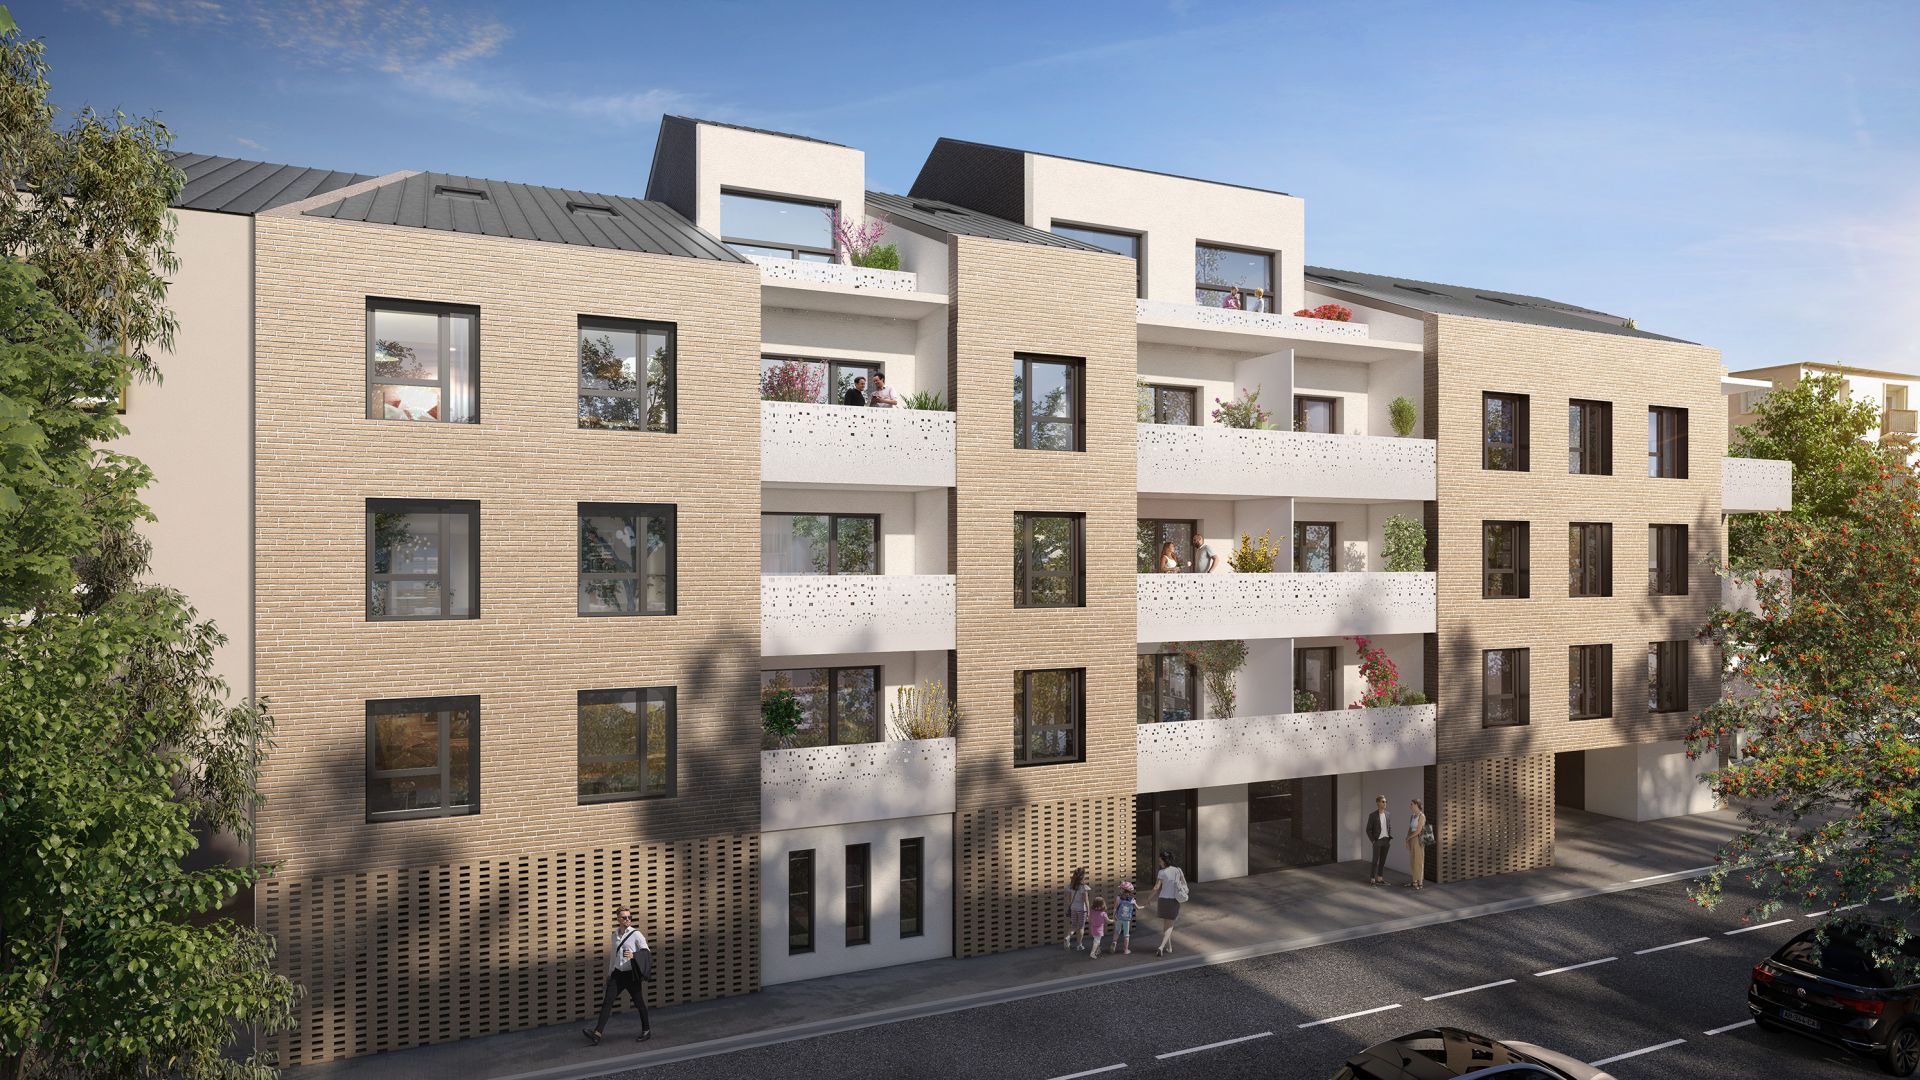 Greencity immobilier - achat appartements neufs du T1 au T3 - Résidence co-living - Résidence Parc Perosa - 73000 Chambéry